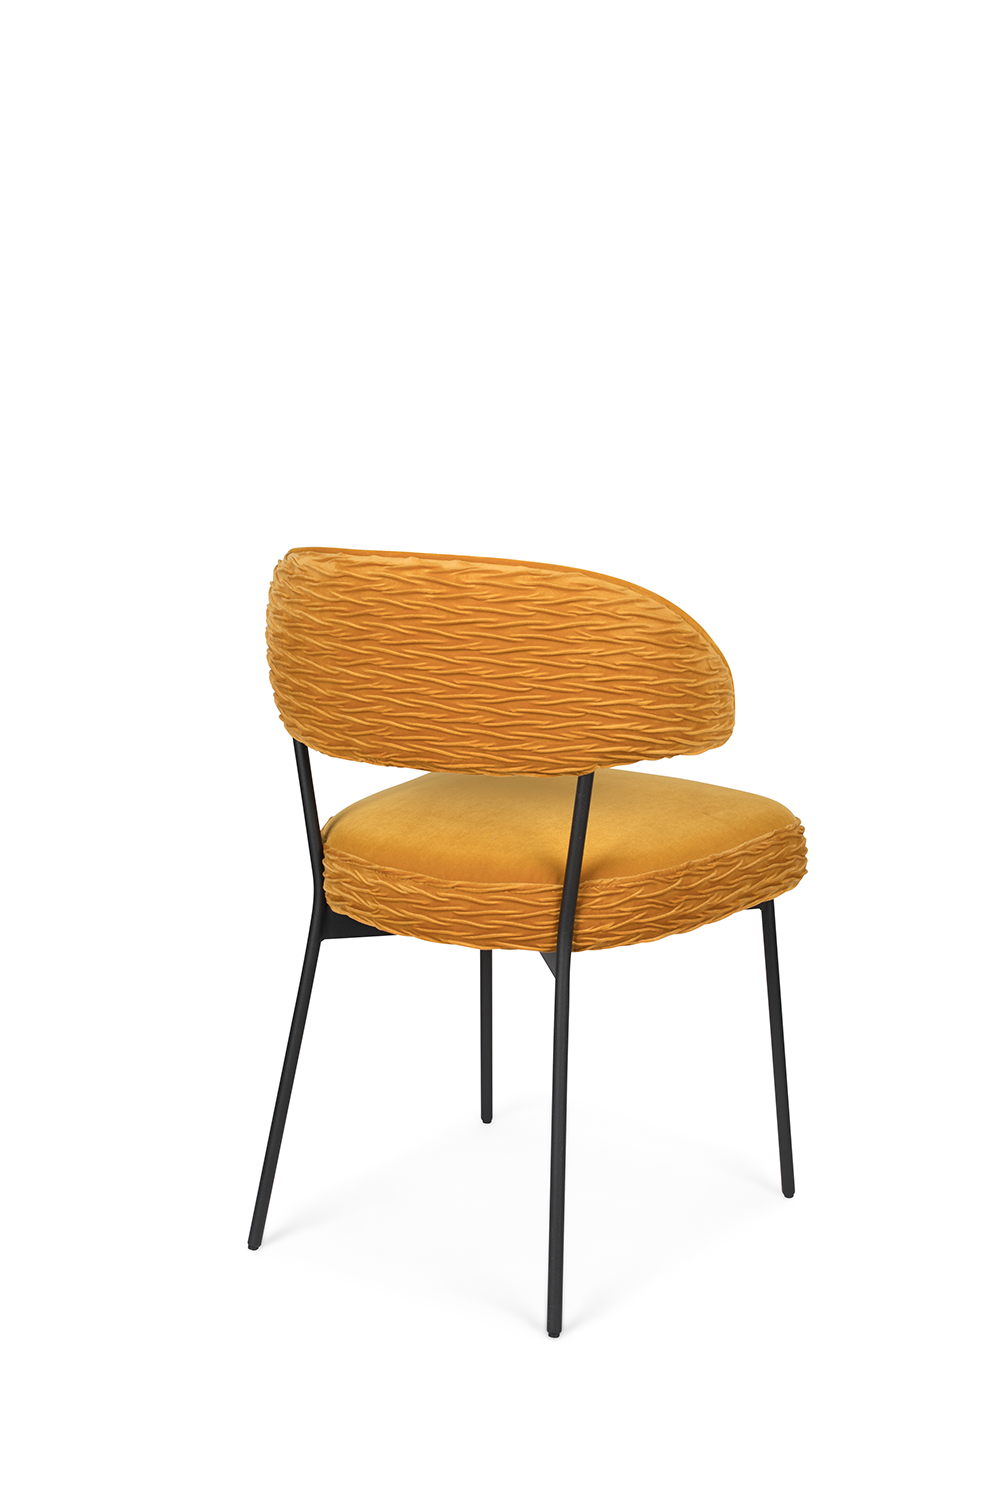 THE WINNER TAKES IT ALL Stuhl in Ocker präsentiert im Onlineshop von KAQTU Design AG. Stuhl ist von Bold Monkey